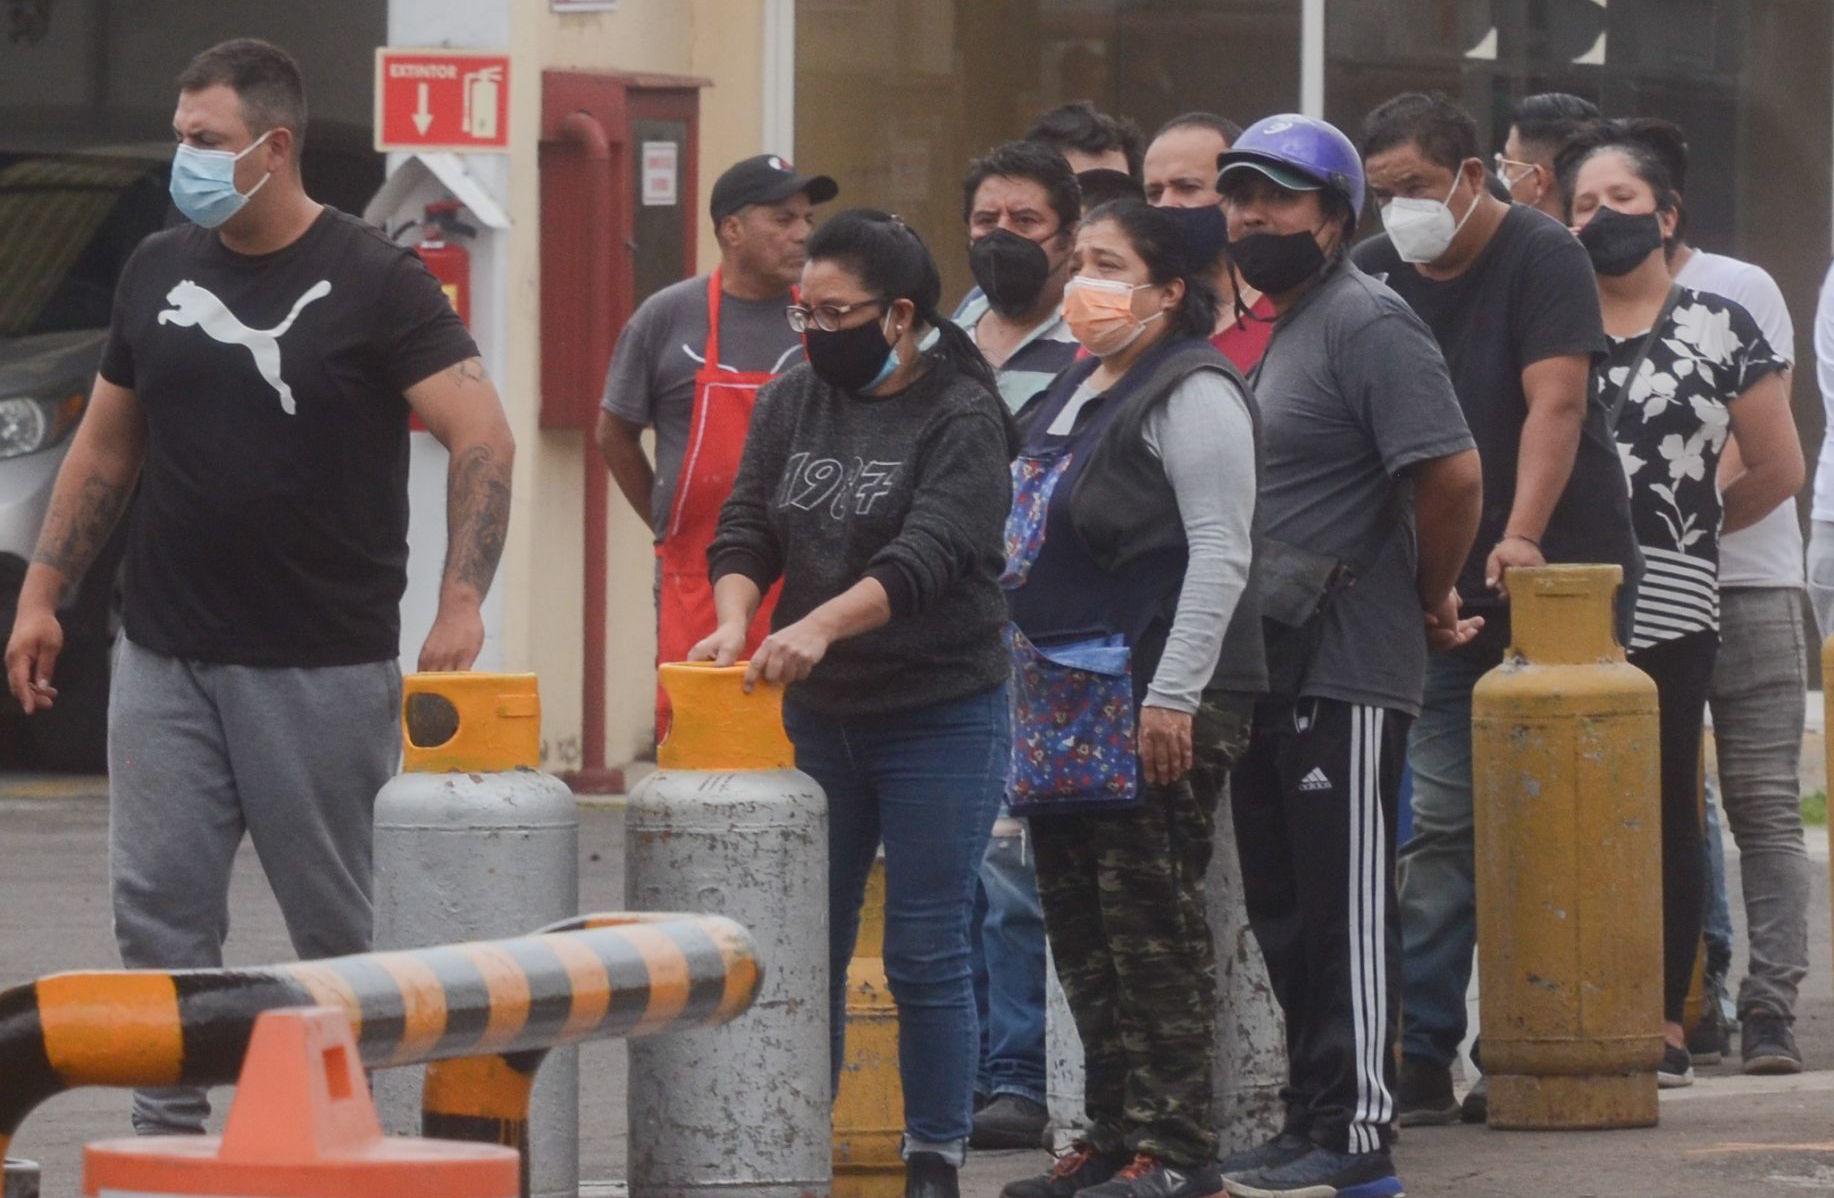 Gaseros reanudan suministro en Valle de México; “resolvimos porque tenemos autoridad moral”: AMLO